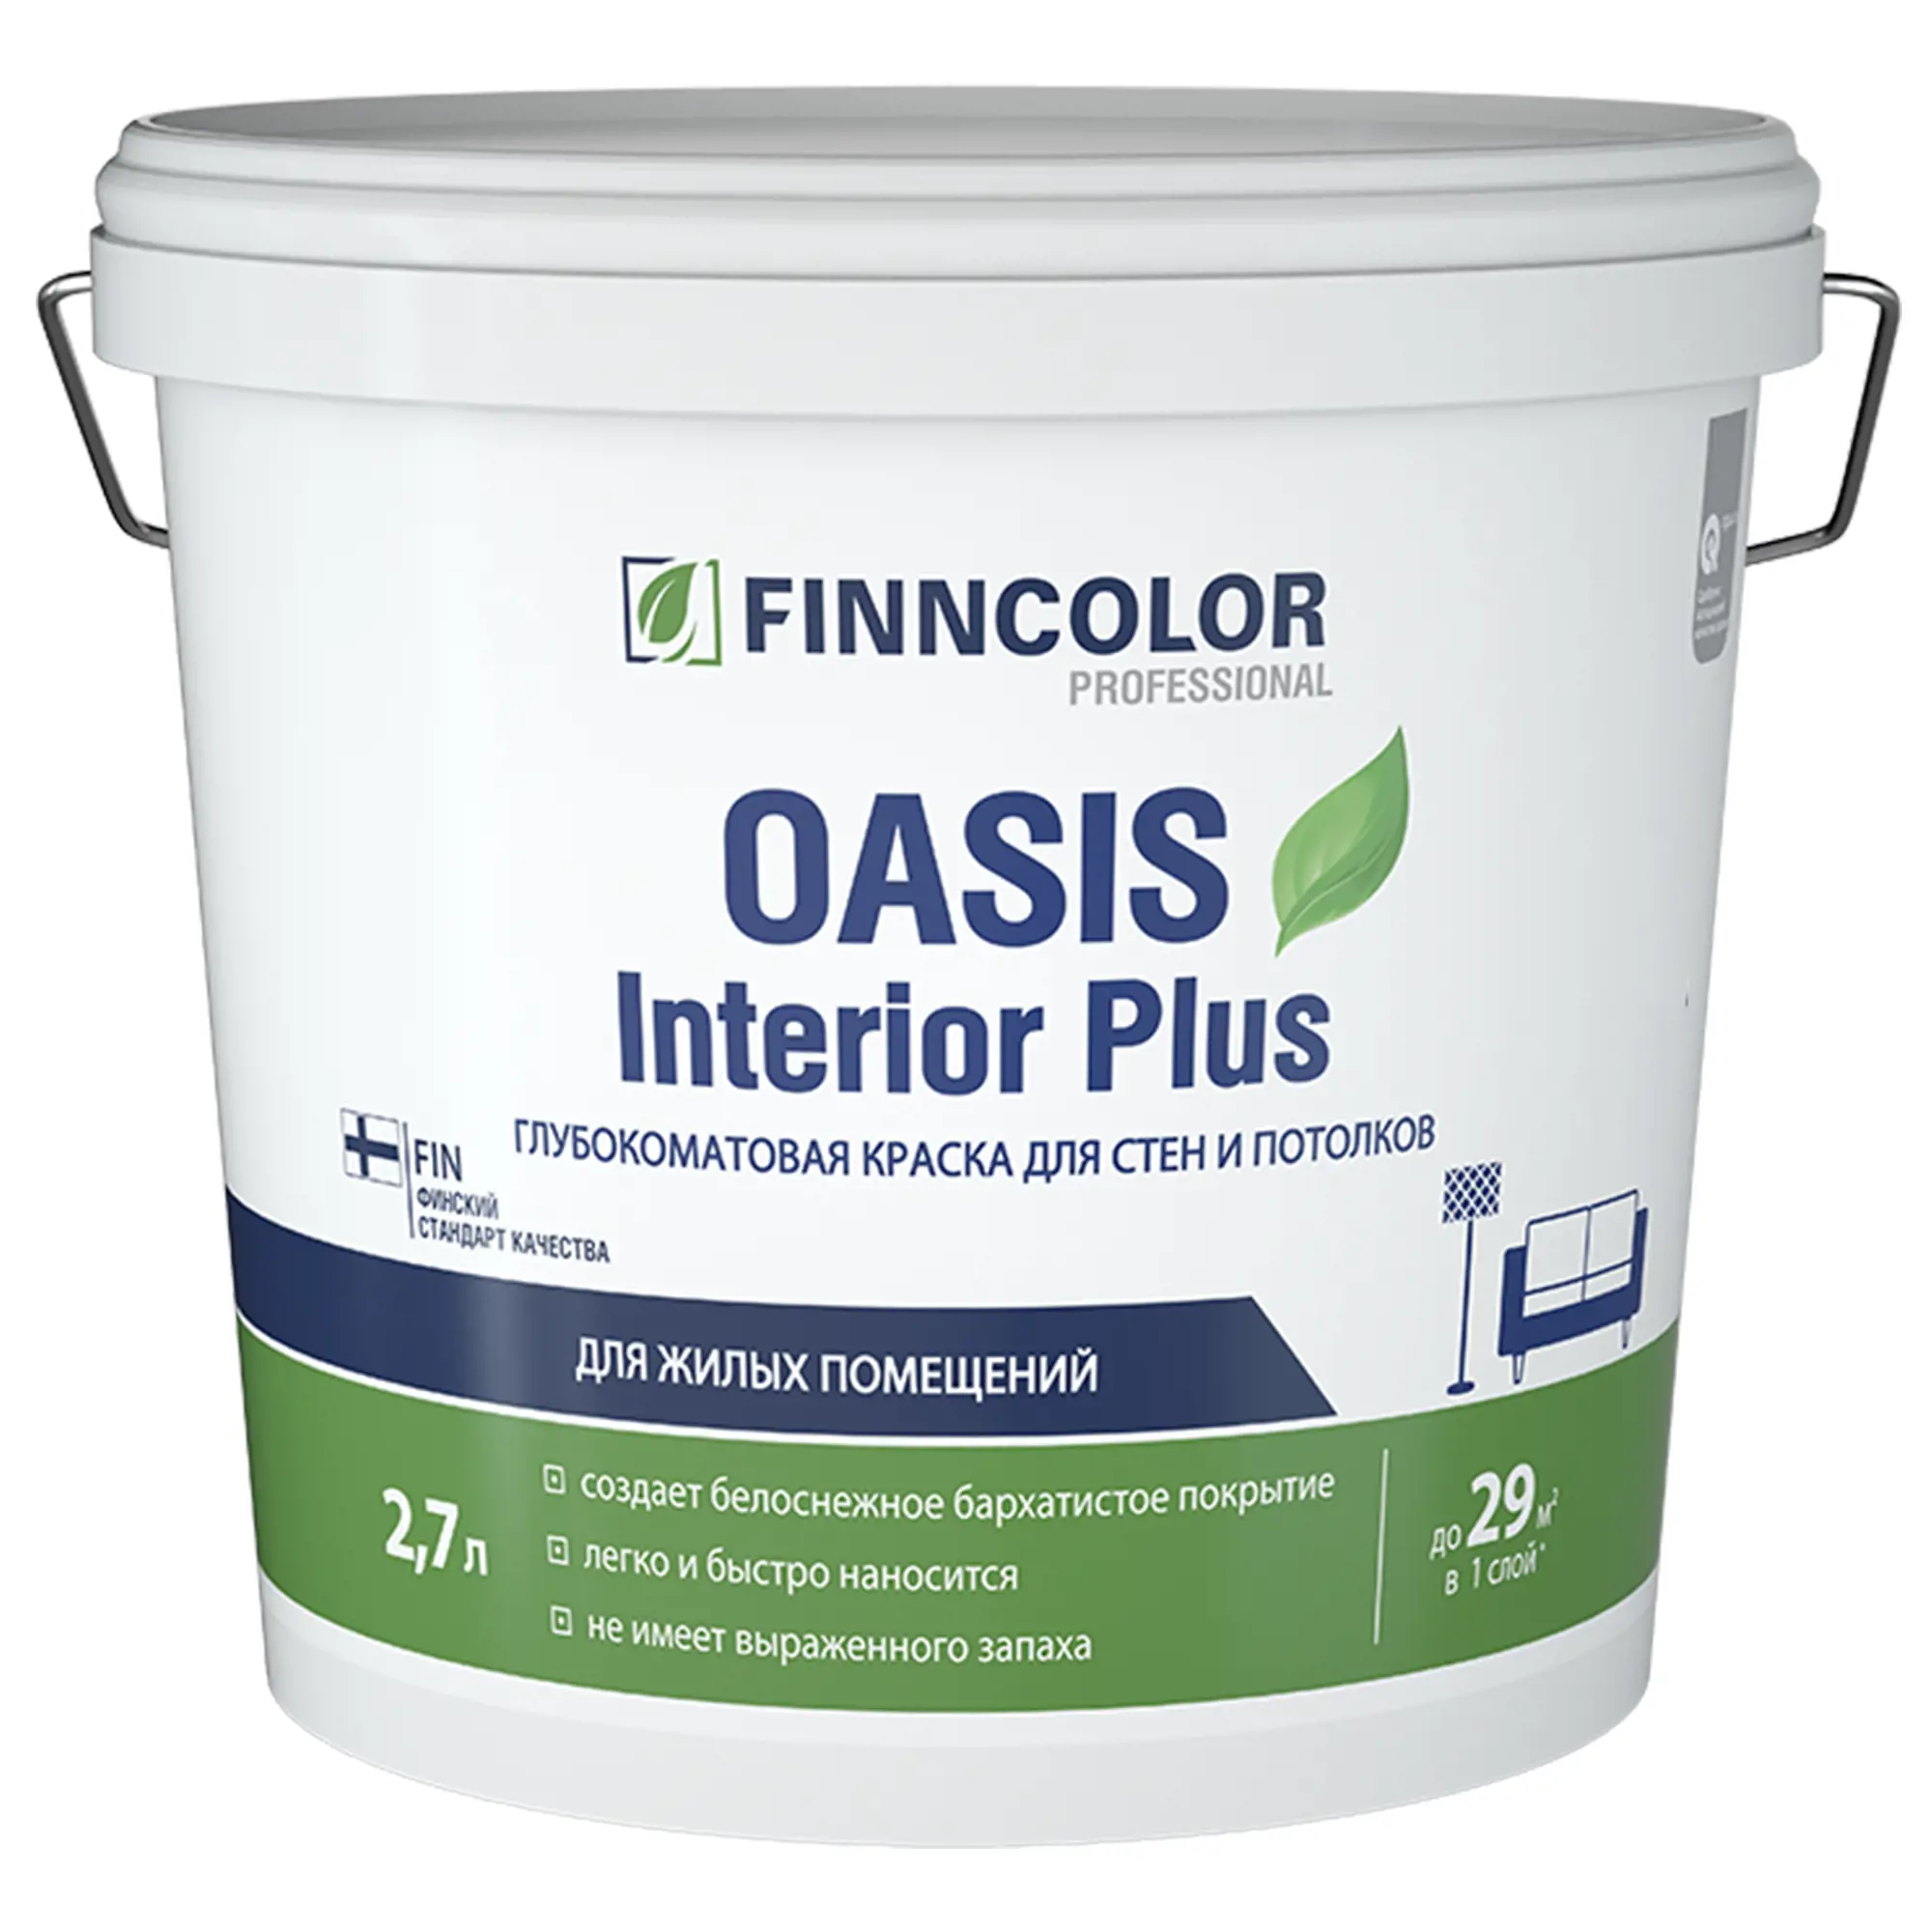 Краска для стен и потолков Finncolor Oasis Interior Plus 2.7л